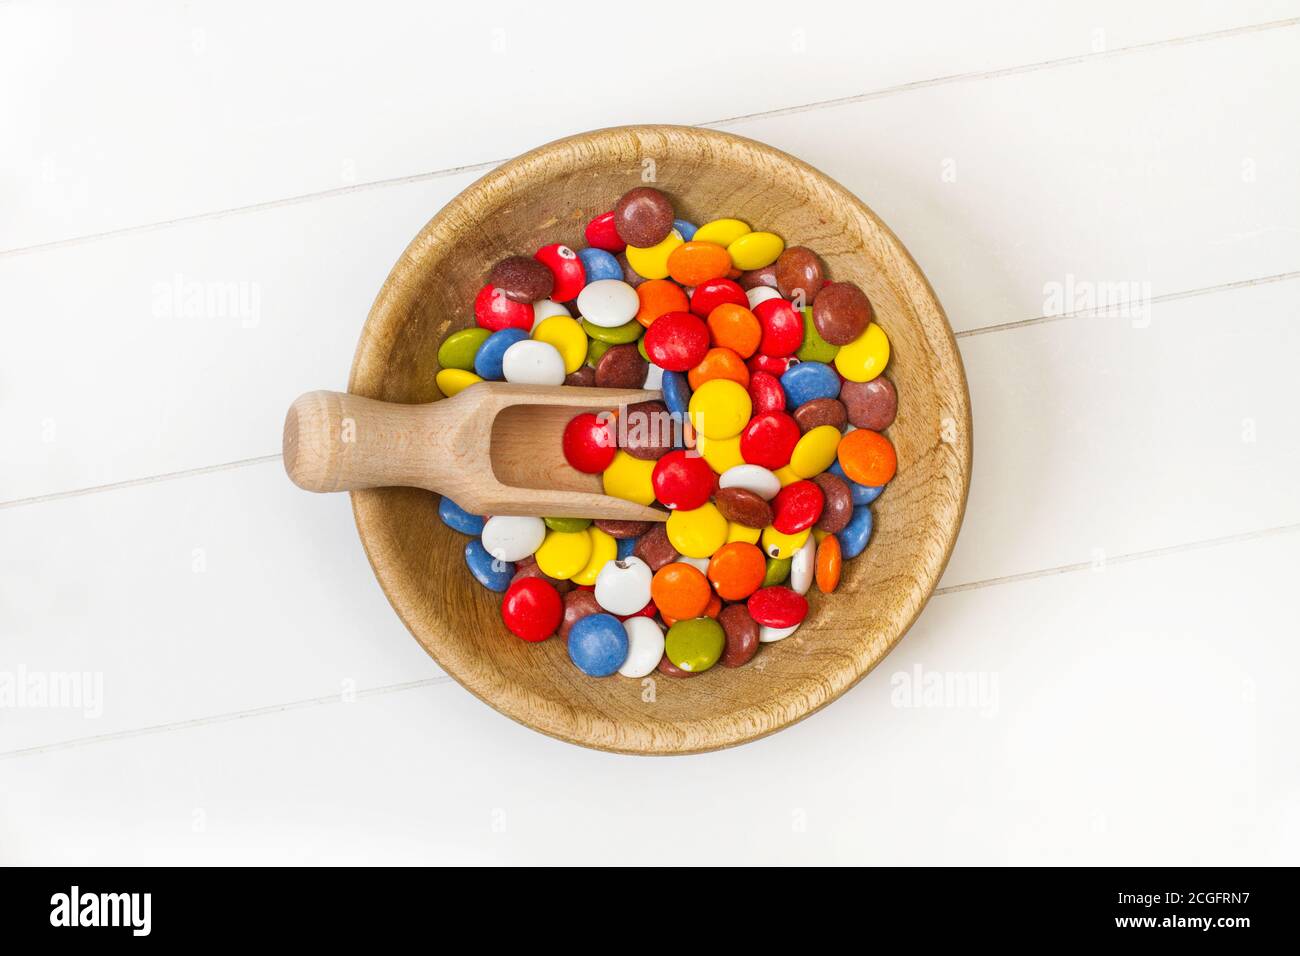 Bunte Hartschalenschokolade Bonbons in einer Holzschüssel auf Eine weiße Tabelle in der Draufsicht Stockfoto